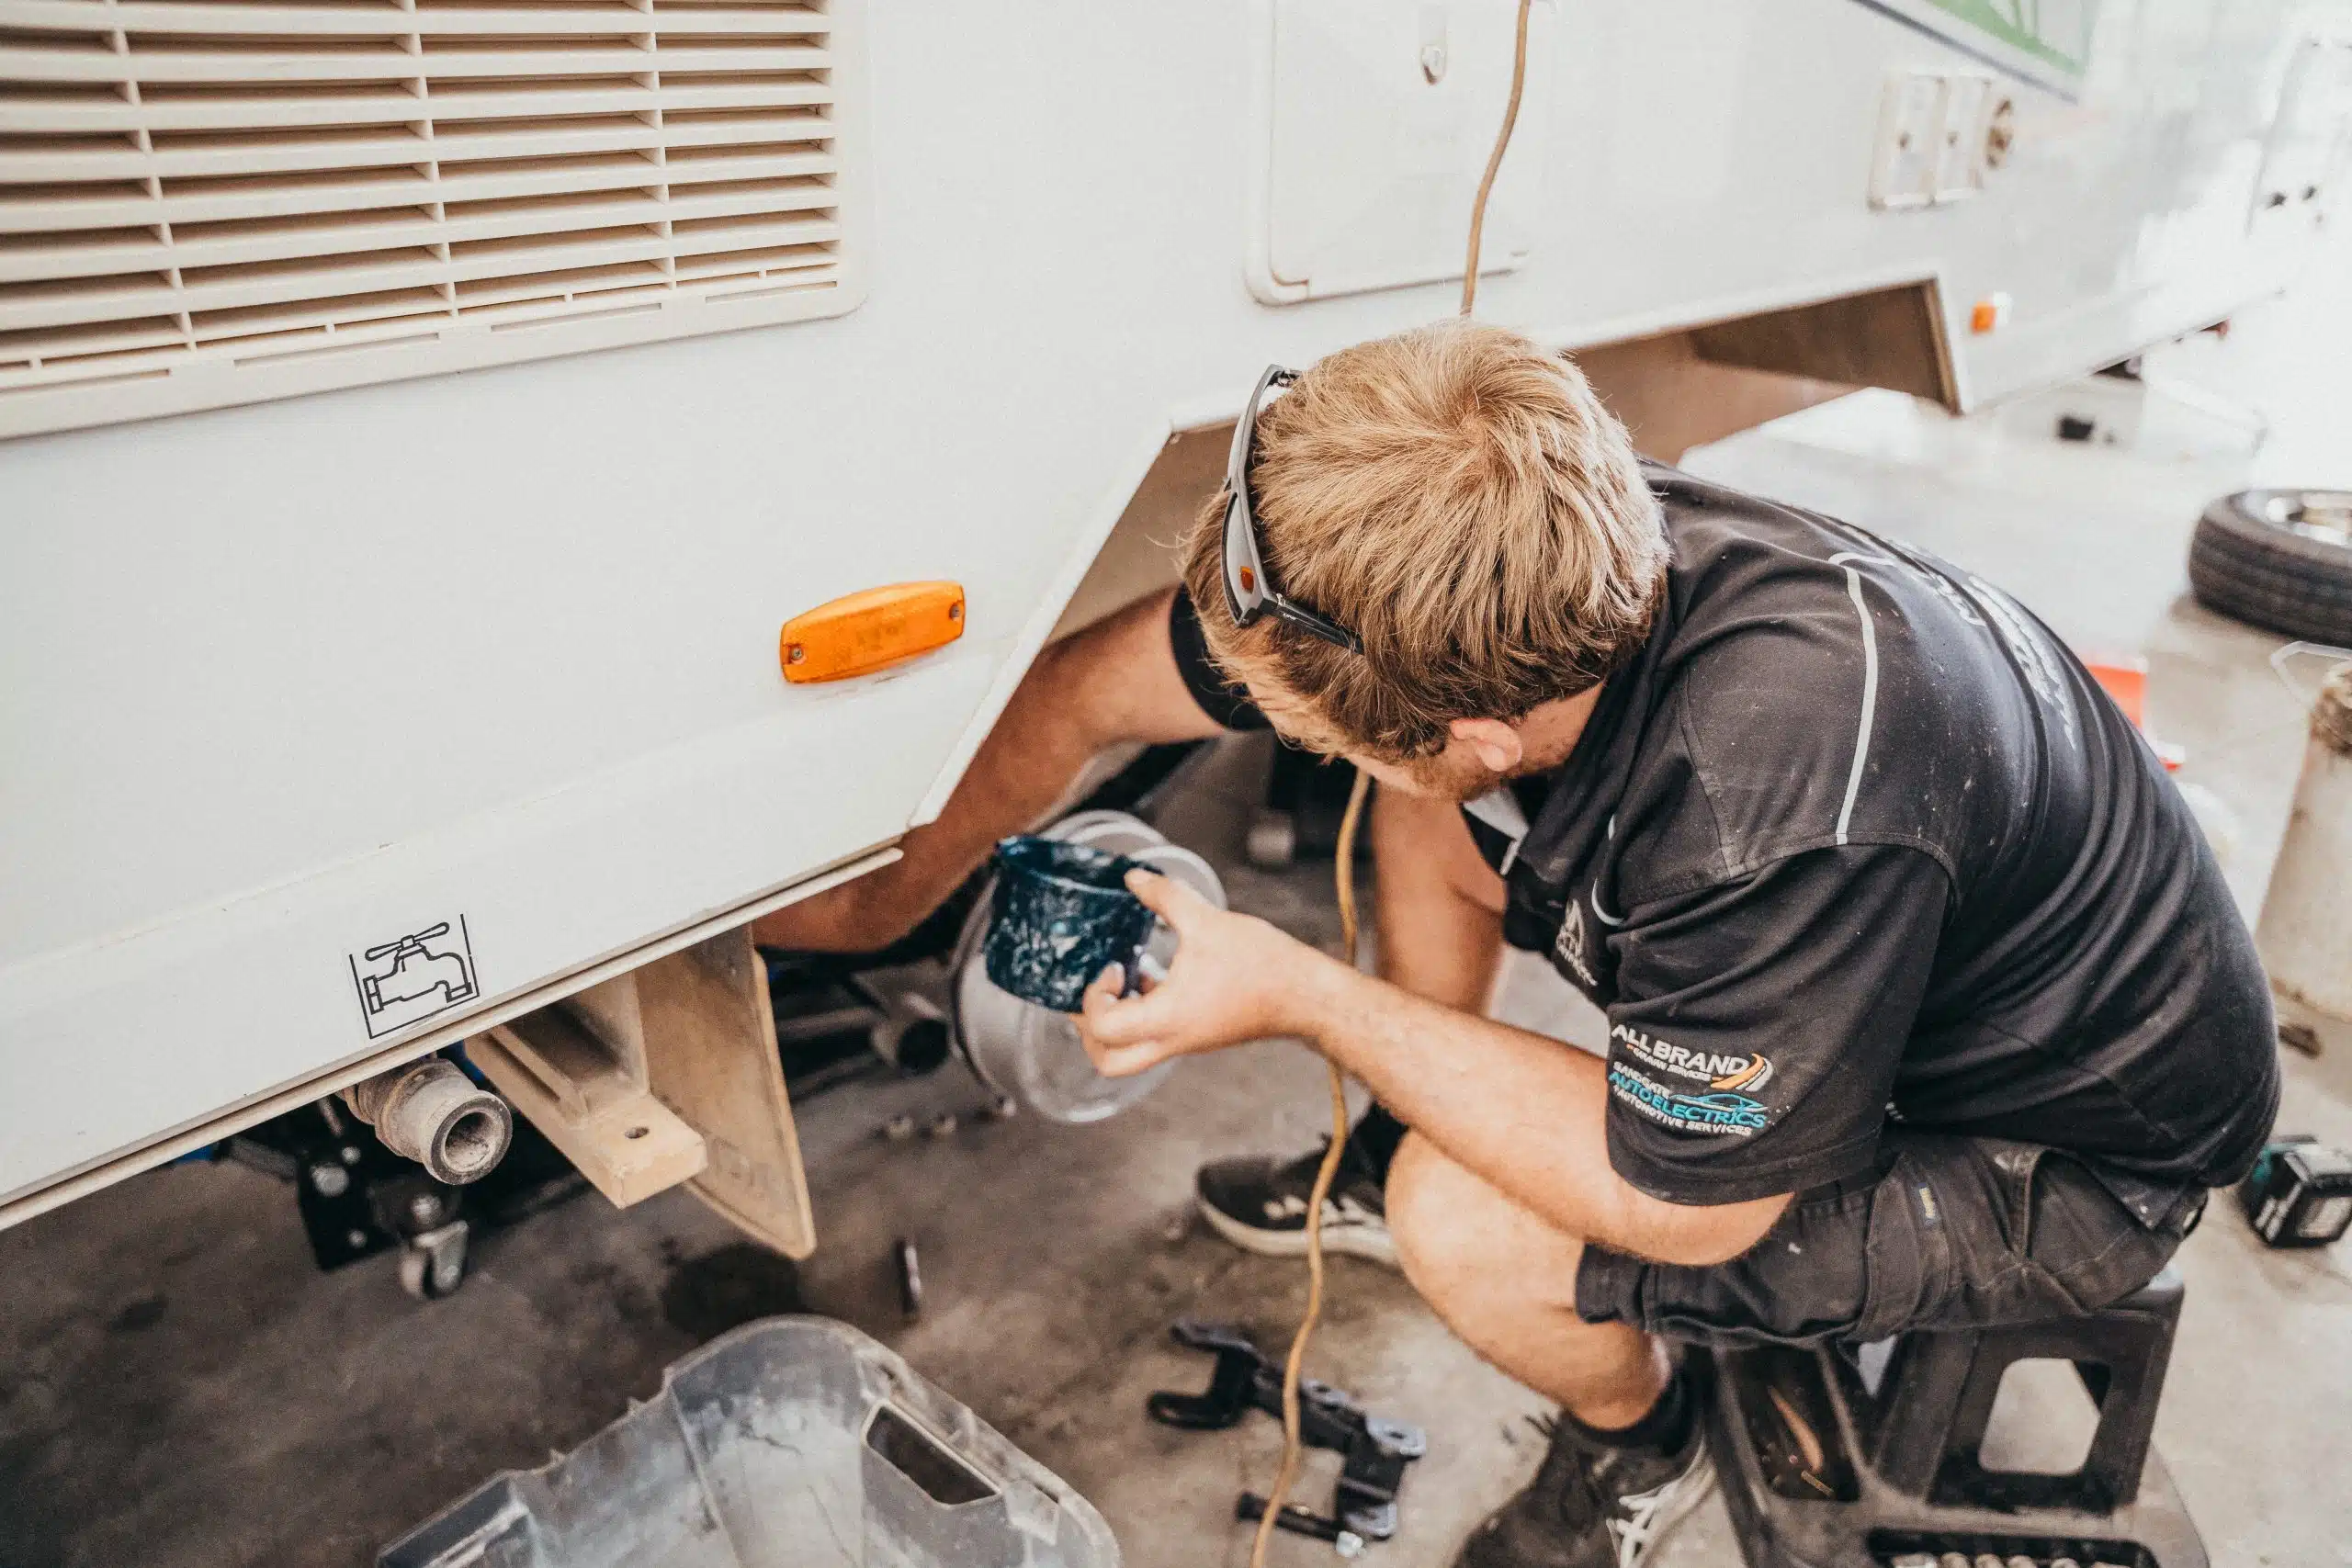 Caravan wheel maintenance underway: Technician services brakes, tires, or bearings